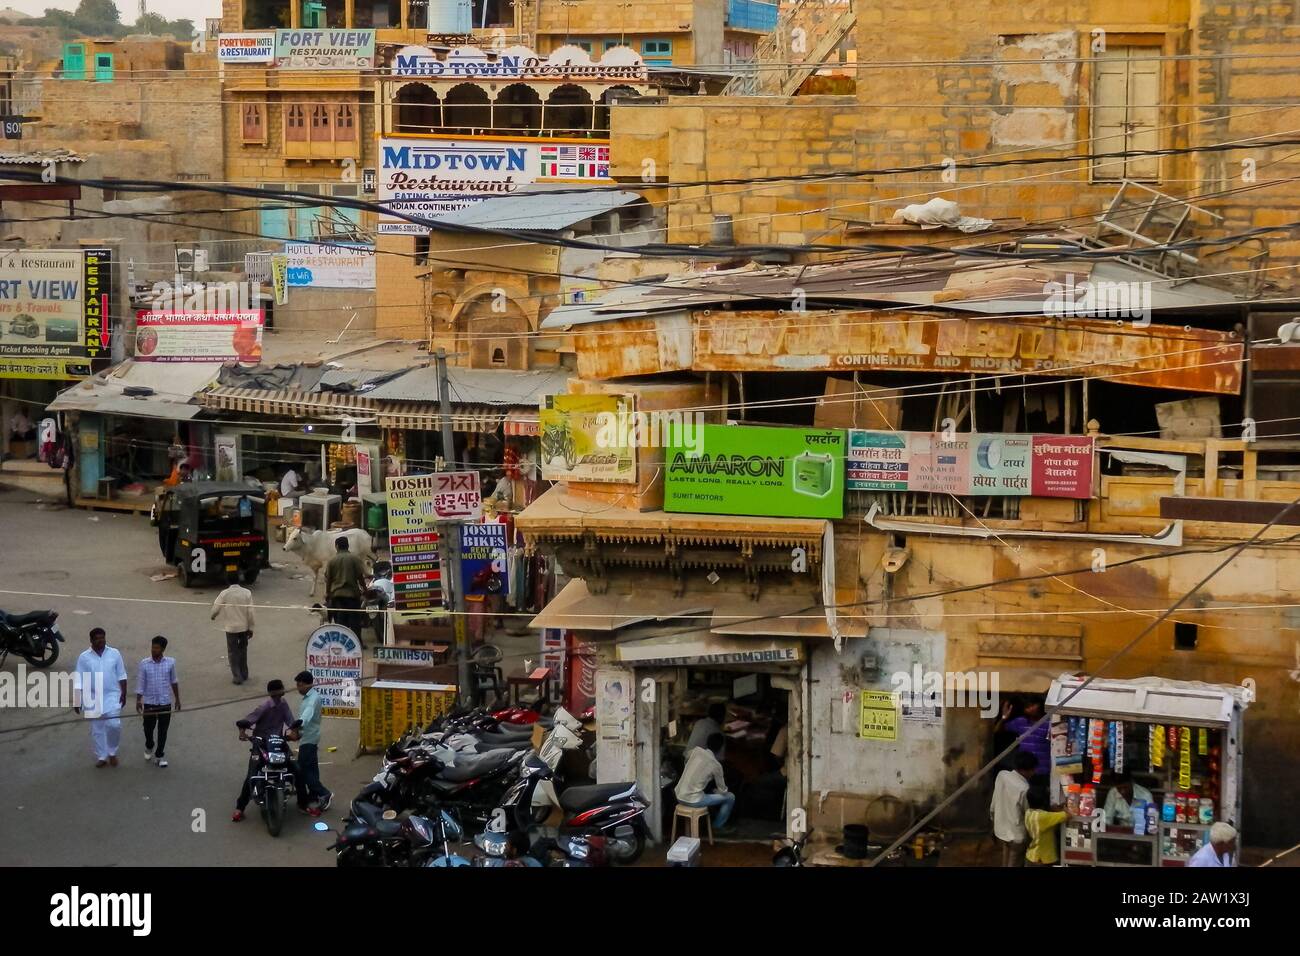 Jaisalmer, Rajasthan/Inde - 5 octobre 2013 : scène typique de rue indienne avec les habitants, divers véhicules et vaches qui erent dans les rues. Banque D'Images